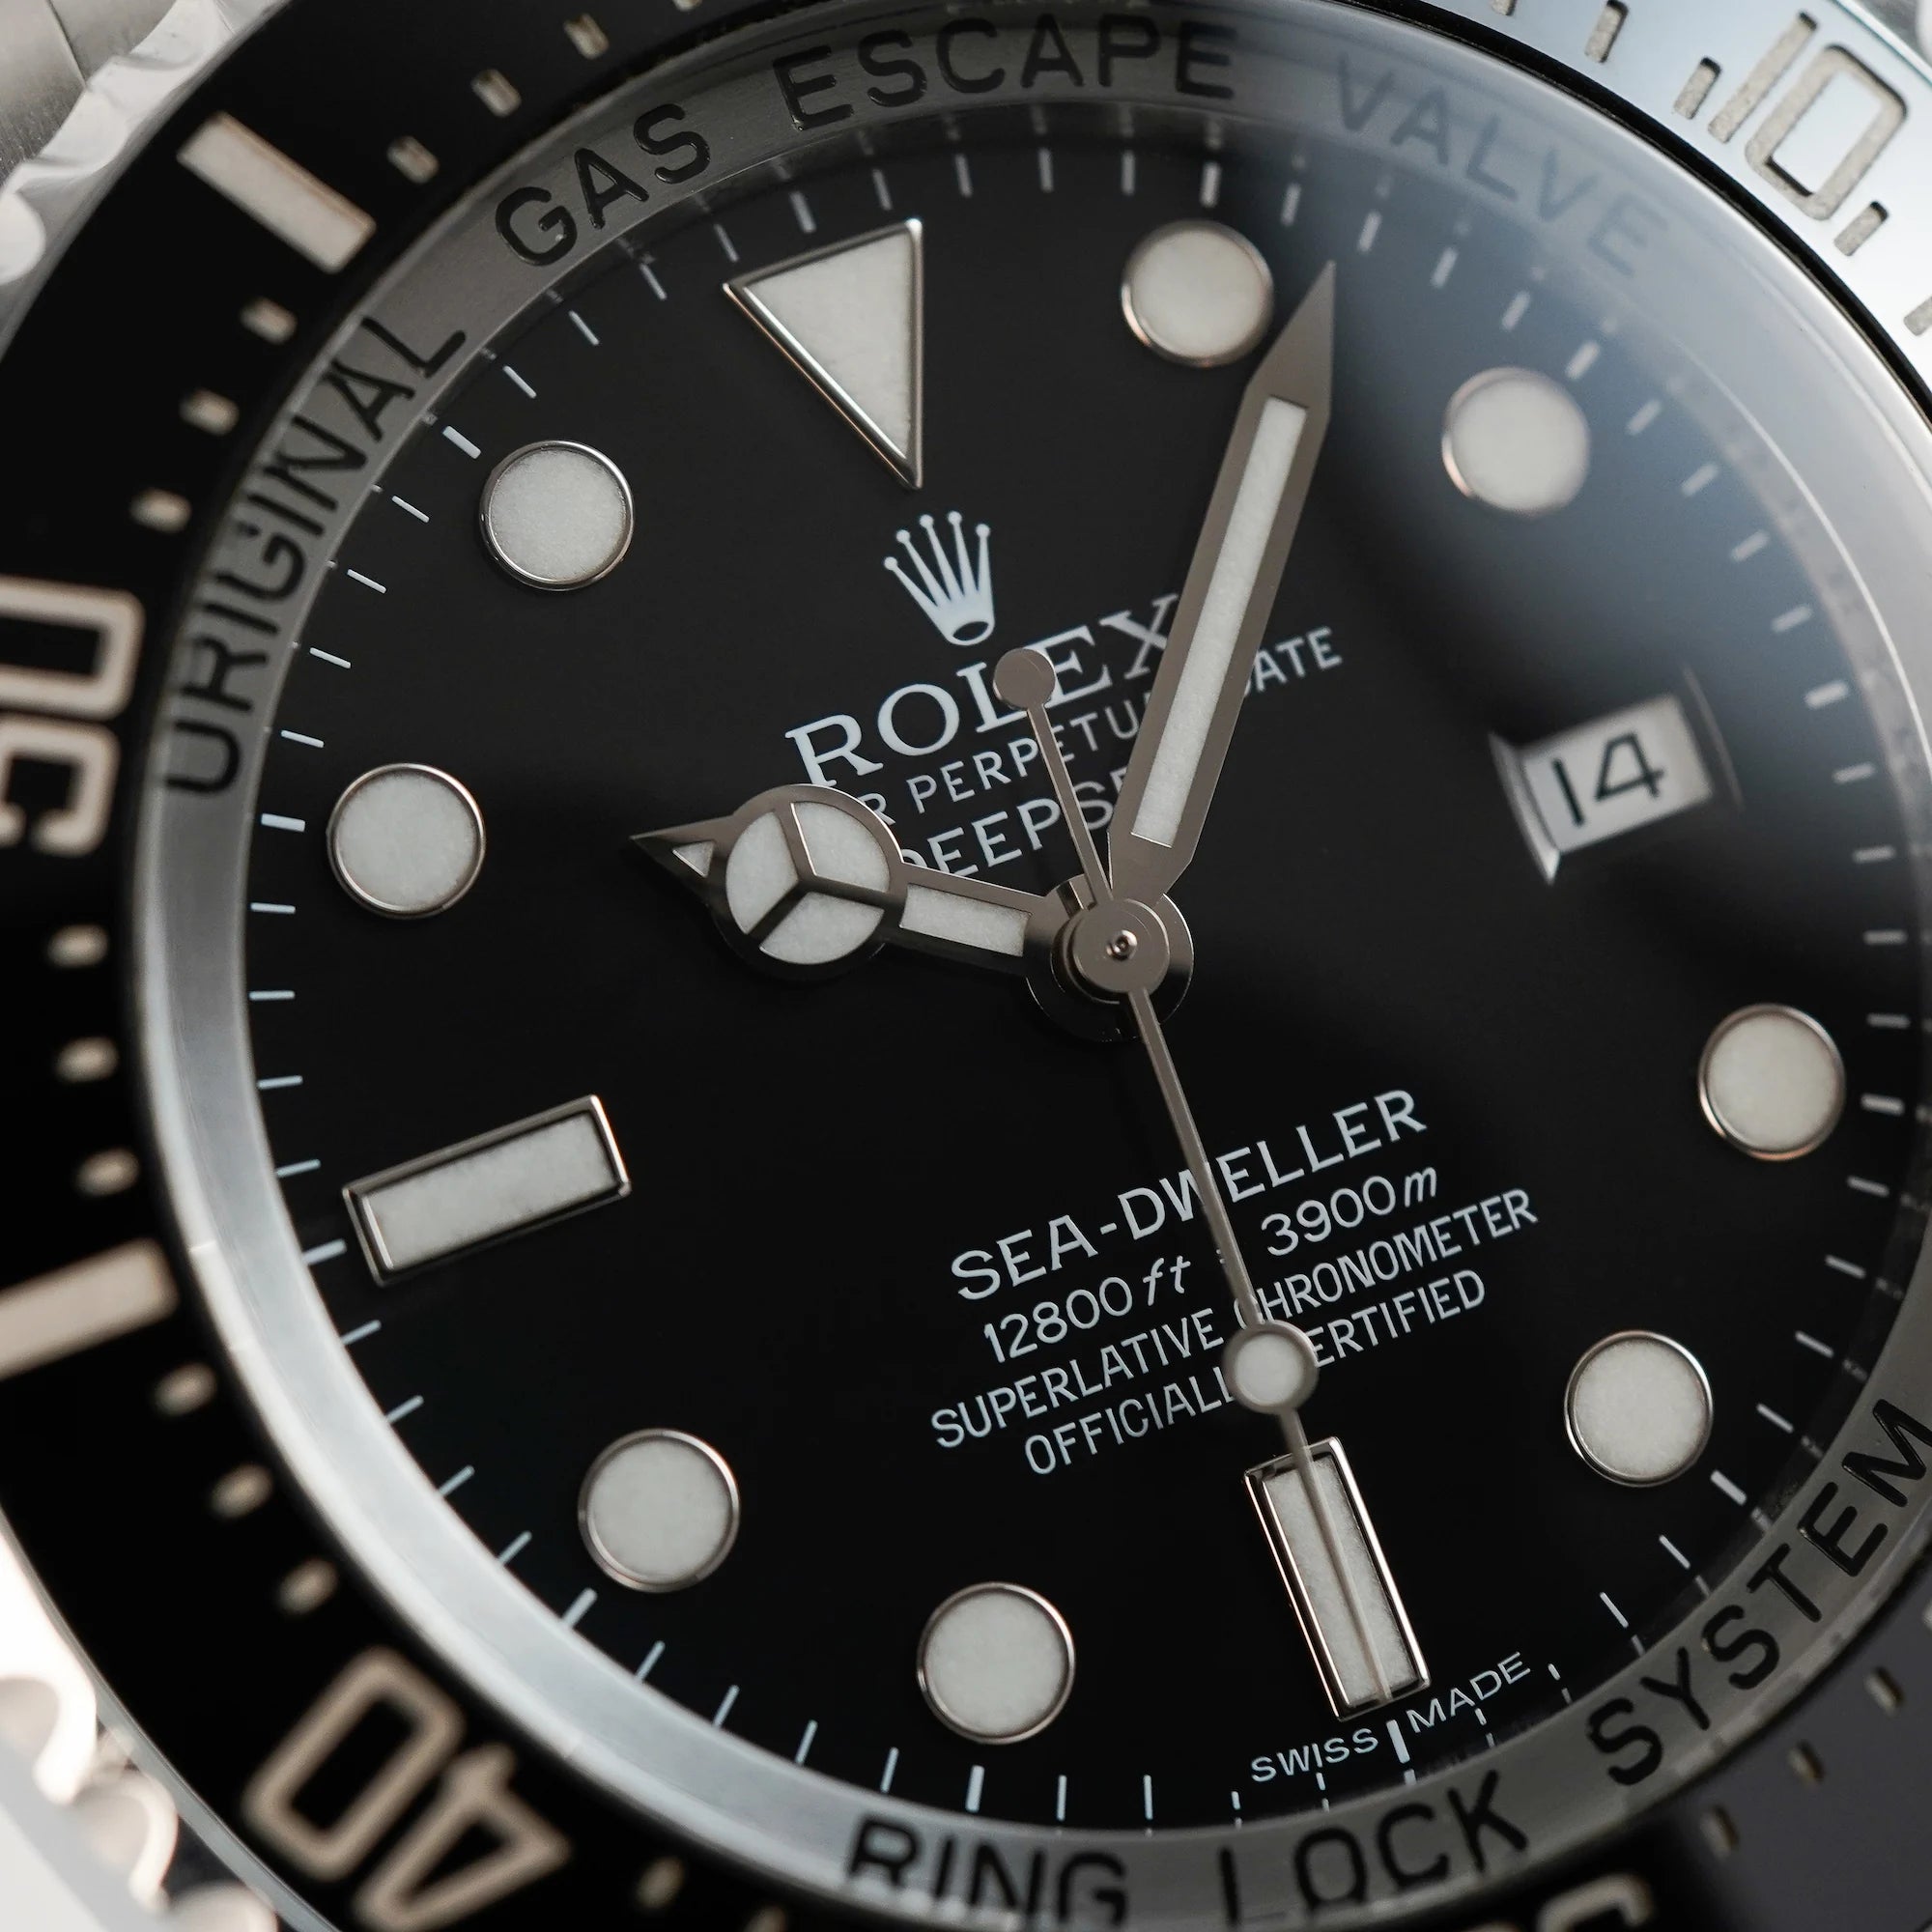 Detailaufnahme des schwarzen Zifferblatts der Rolex Sea Dweller Deepsea, Referenz 116660